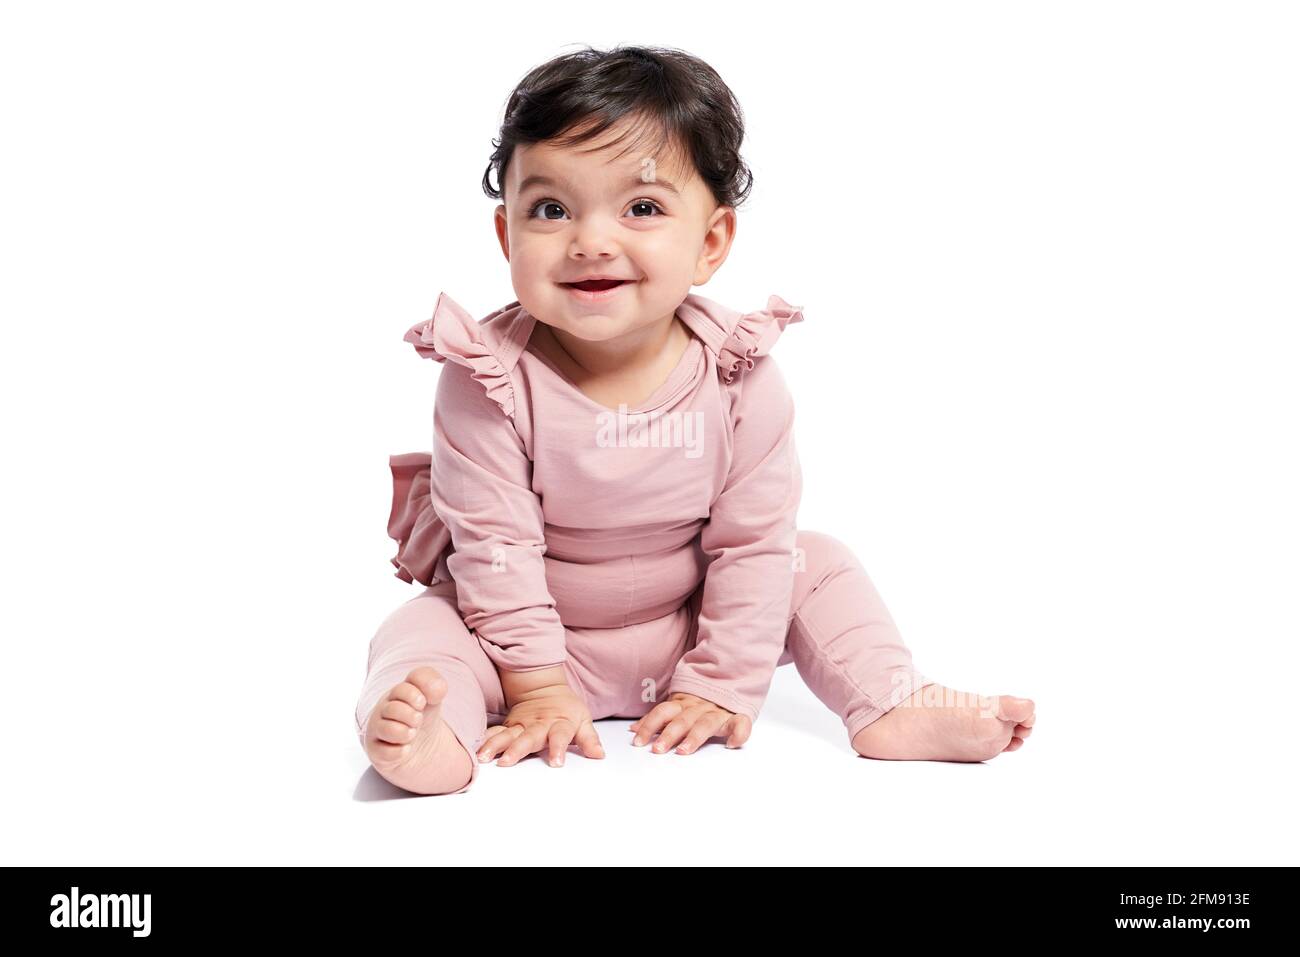 Niedliches weibliches Baby im schönen rosa Outfit lächelnd mit offenem Mund. Attraktives kleines Baby, das auf dem Boden sitzt und posiert, isoliert auf weißem Studiohintergrund. Konzept der Kindheit. Stockfoto